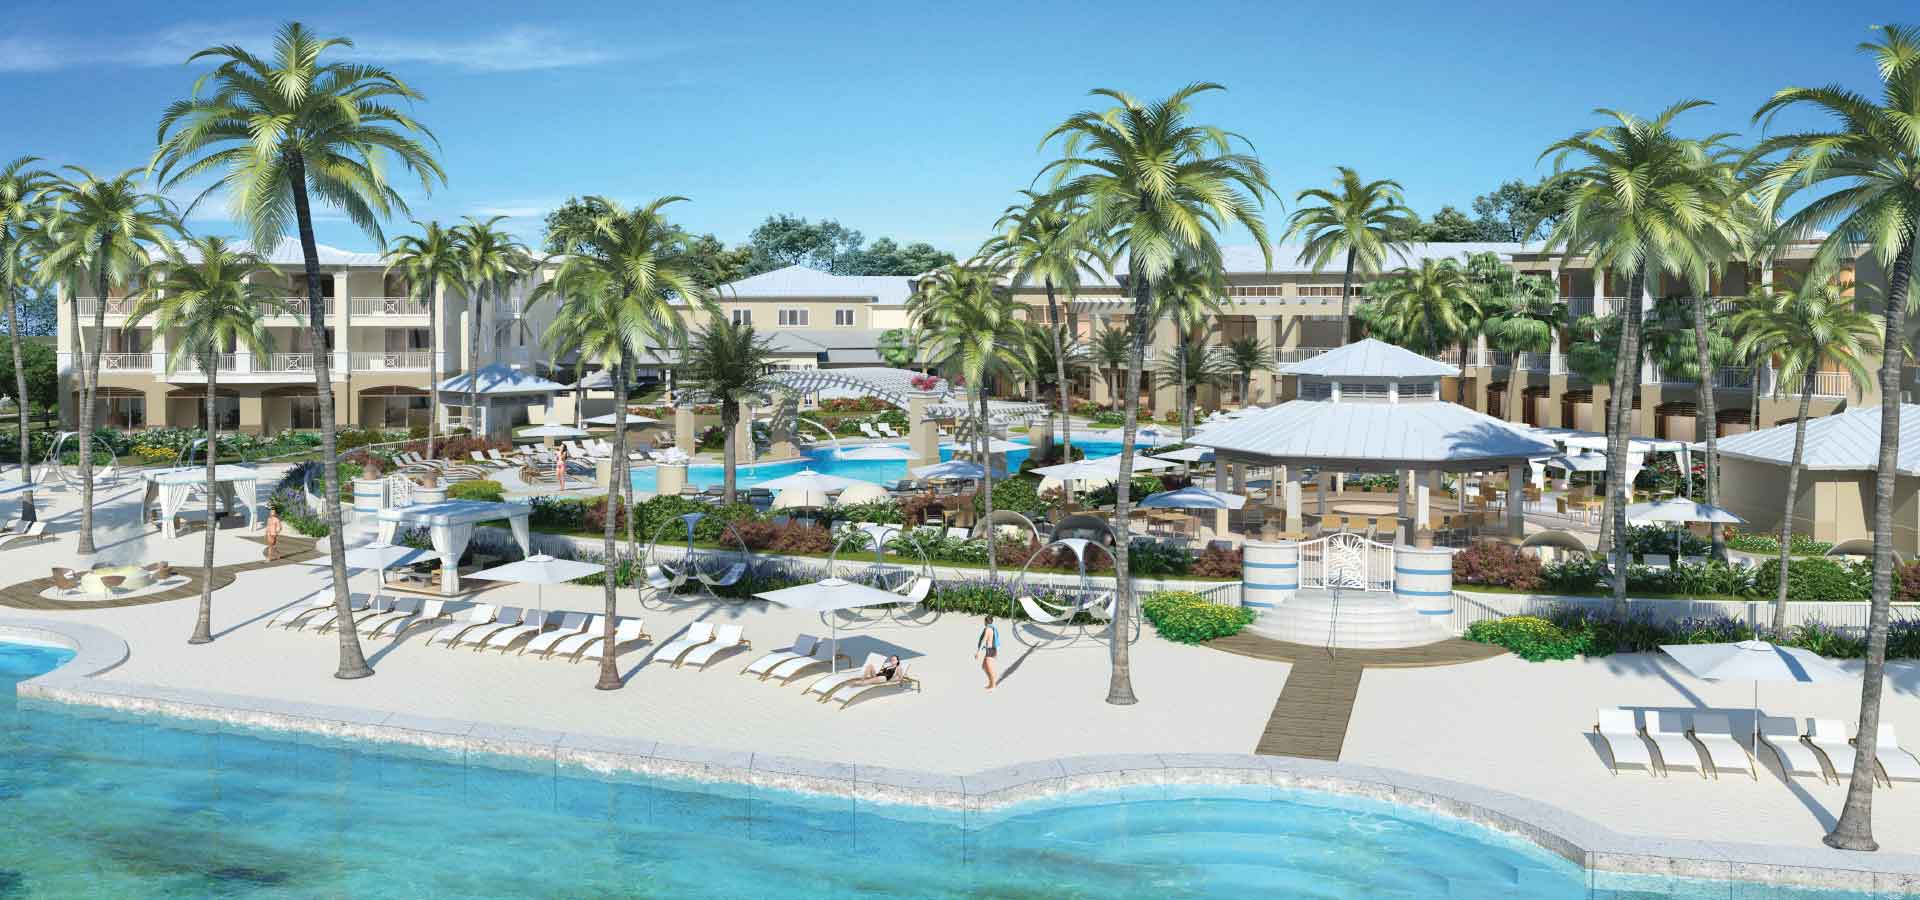 Escapes de altura: El Resort & Spa Playa Largo en Cayo Largo